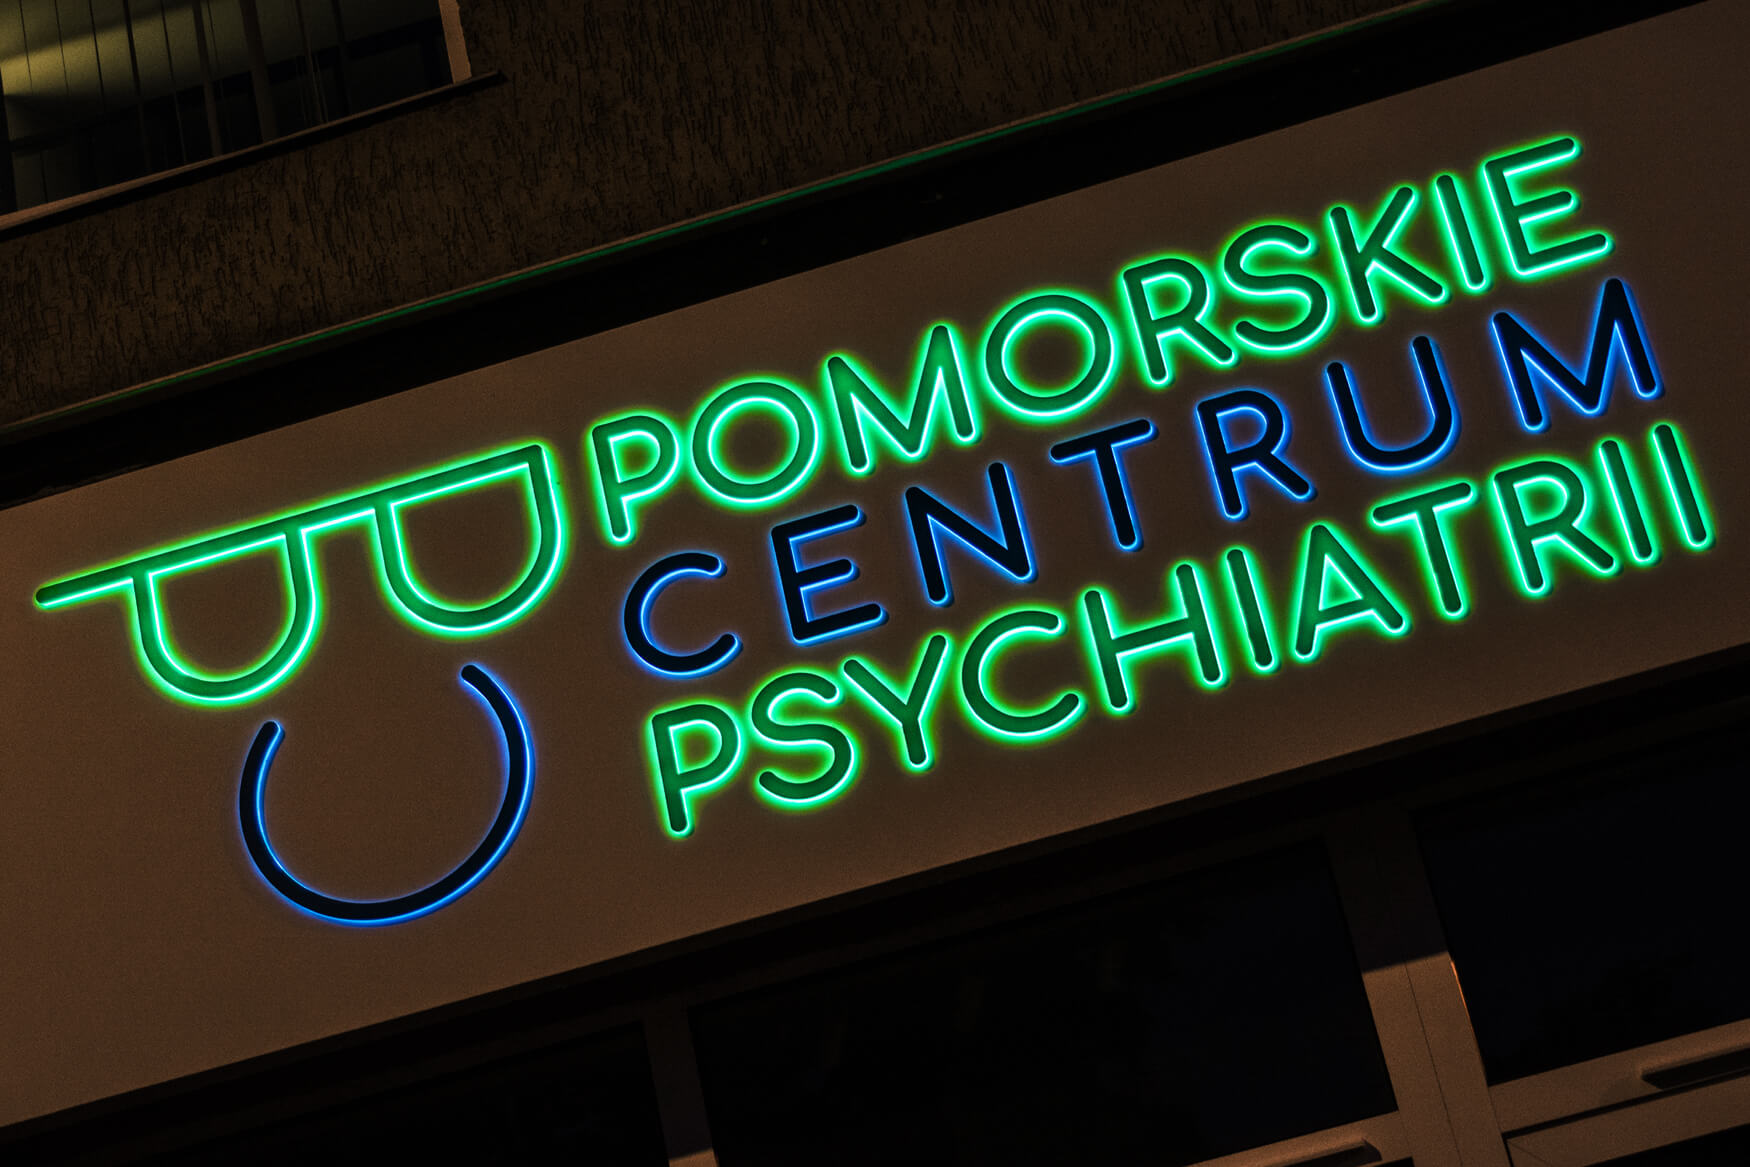 Centre de psychiatrie de Poméranie  - Centre psychiatrique de Poméranie - panneau publicitaire en dibond placé au-dessus de l'entrée